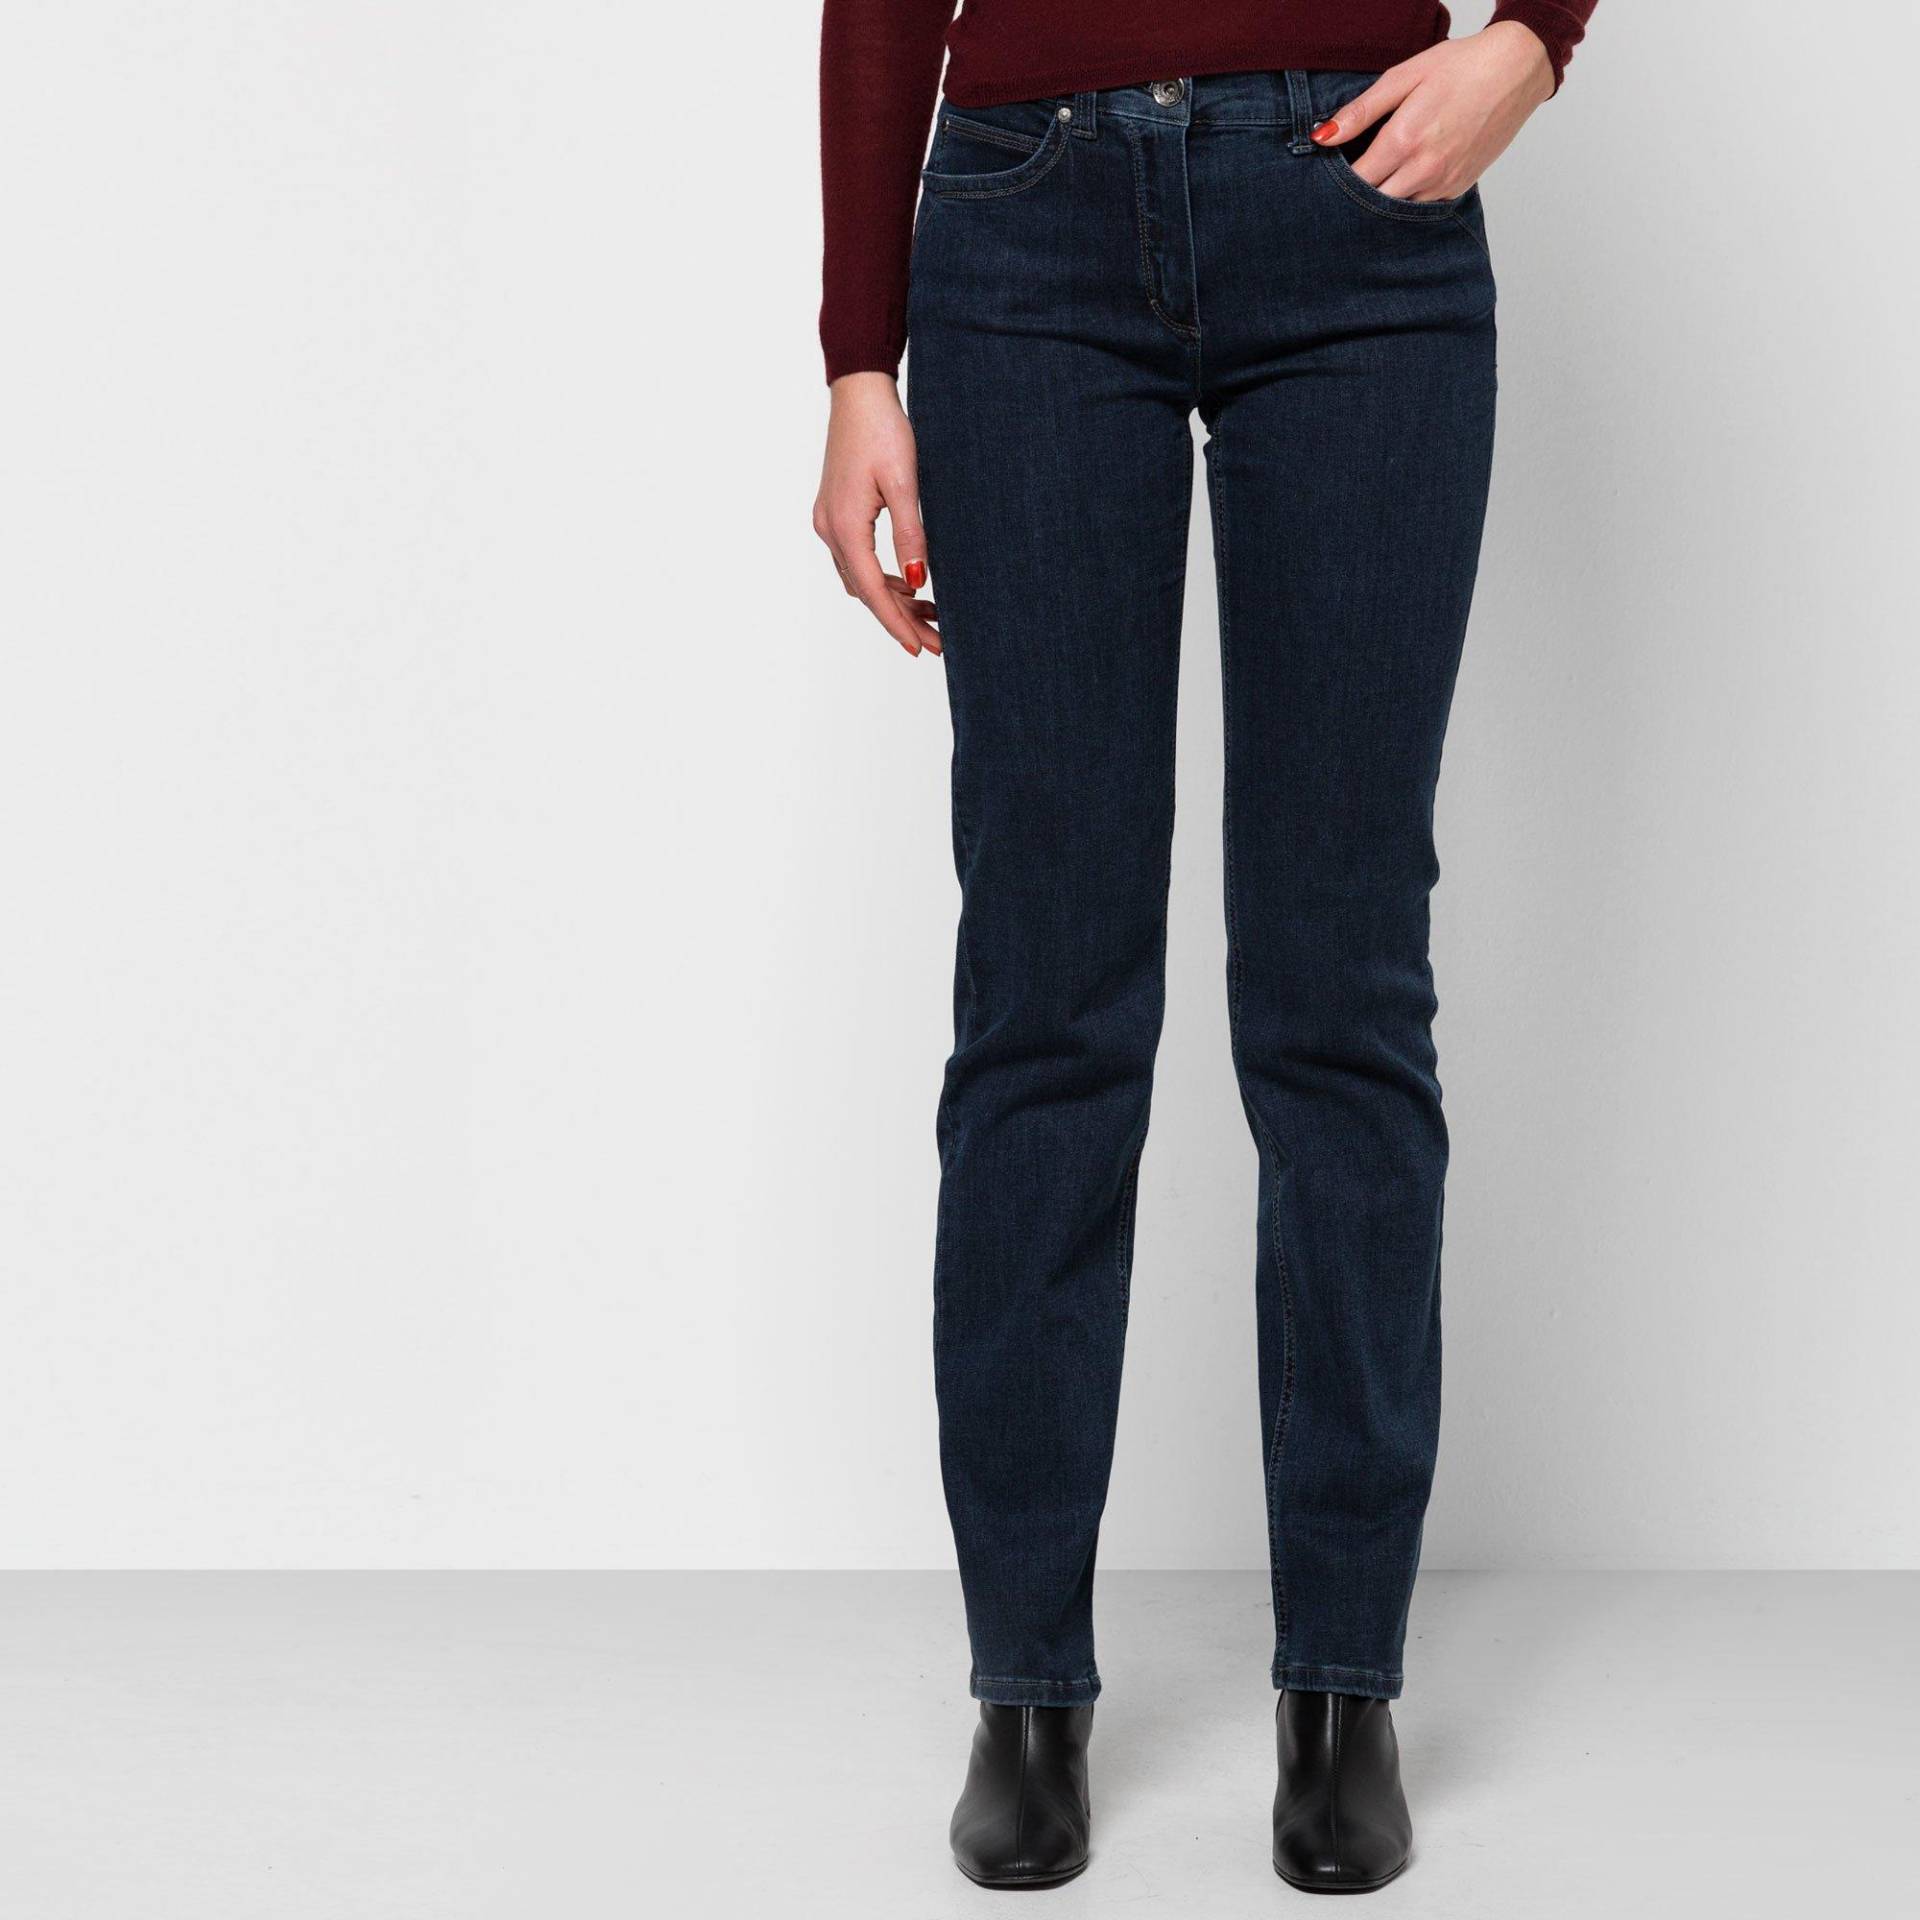 Jeans, Slim Fit Damen Blau Denim W44 von ANNA MONTANA